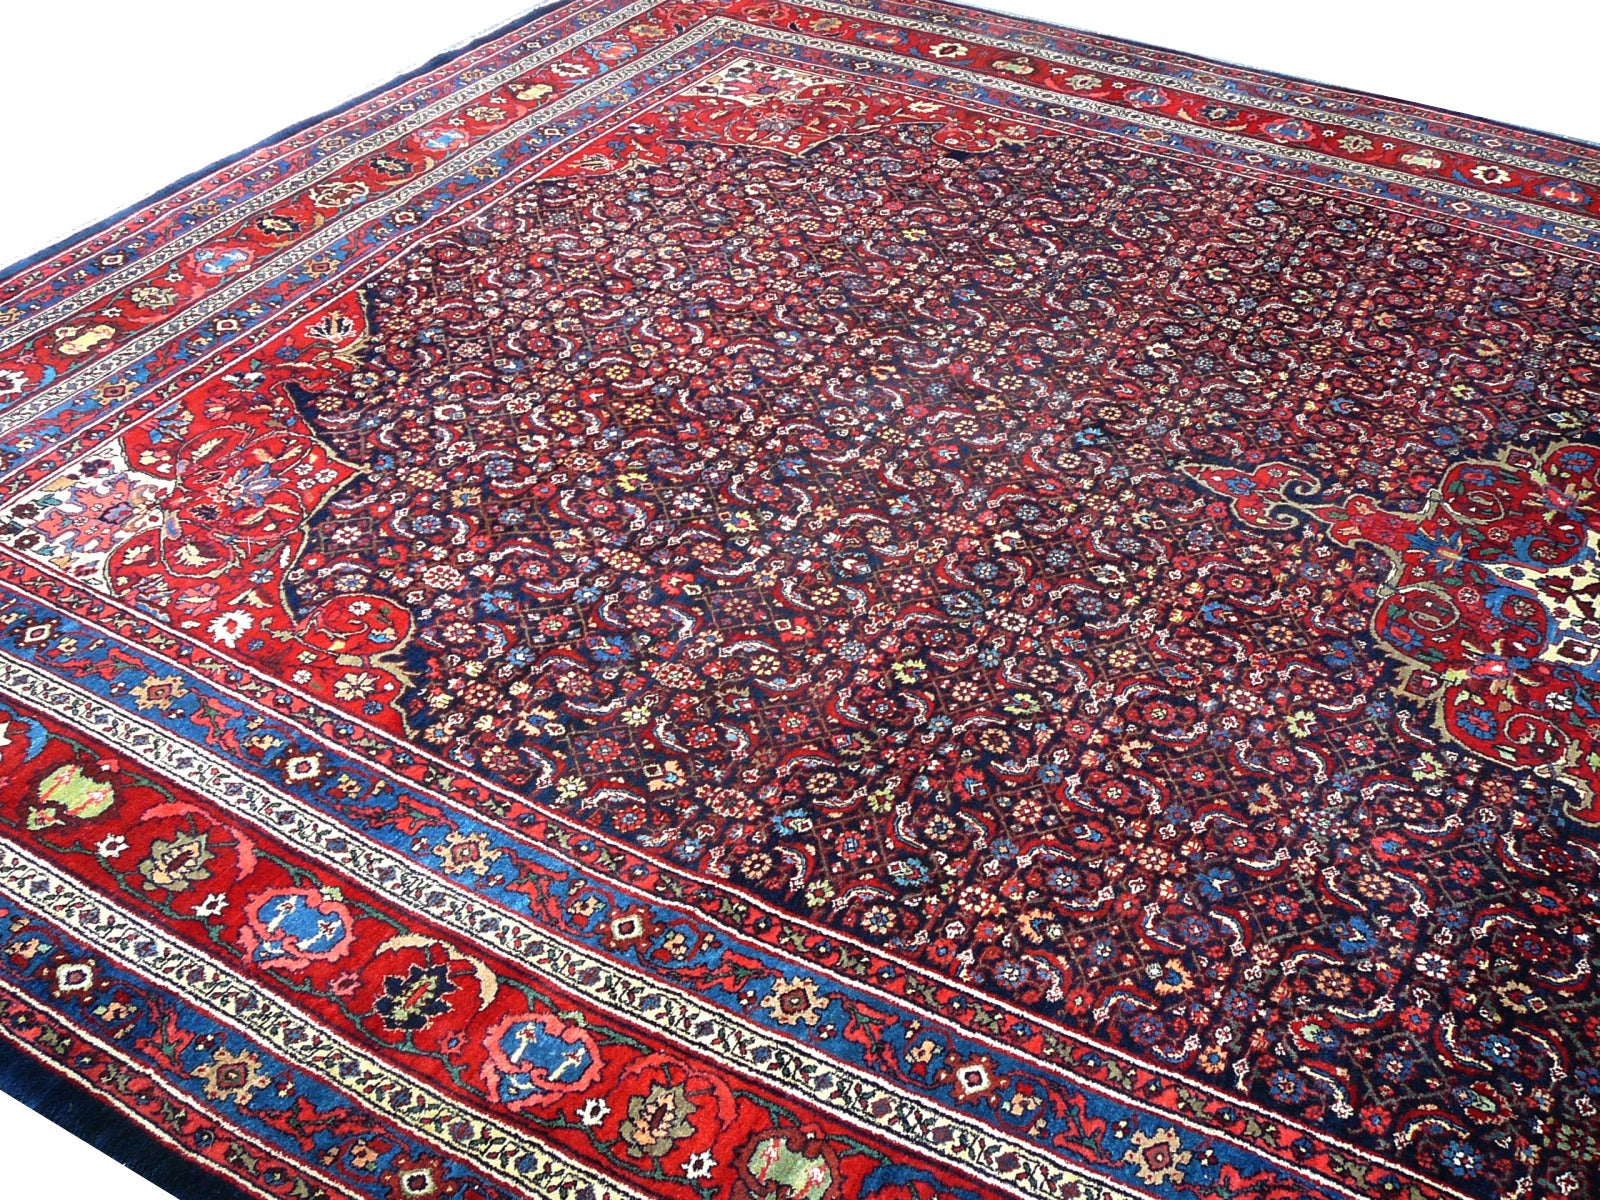 https://the-rug-merchant.com/cdn/shop/products/Antique-Bidjar-Rug-Blue-Persian-13883-10_1800x1800.jpg?v=1652082159